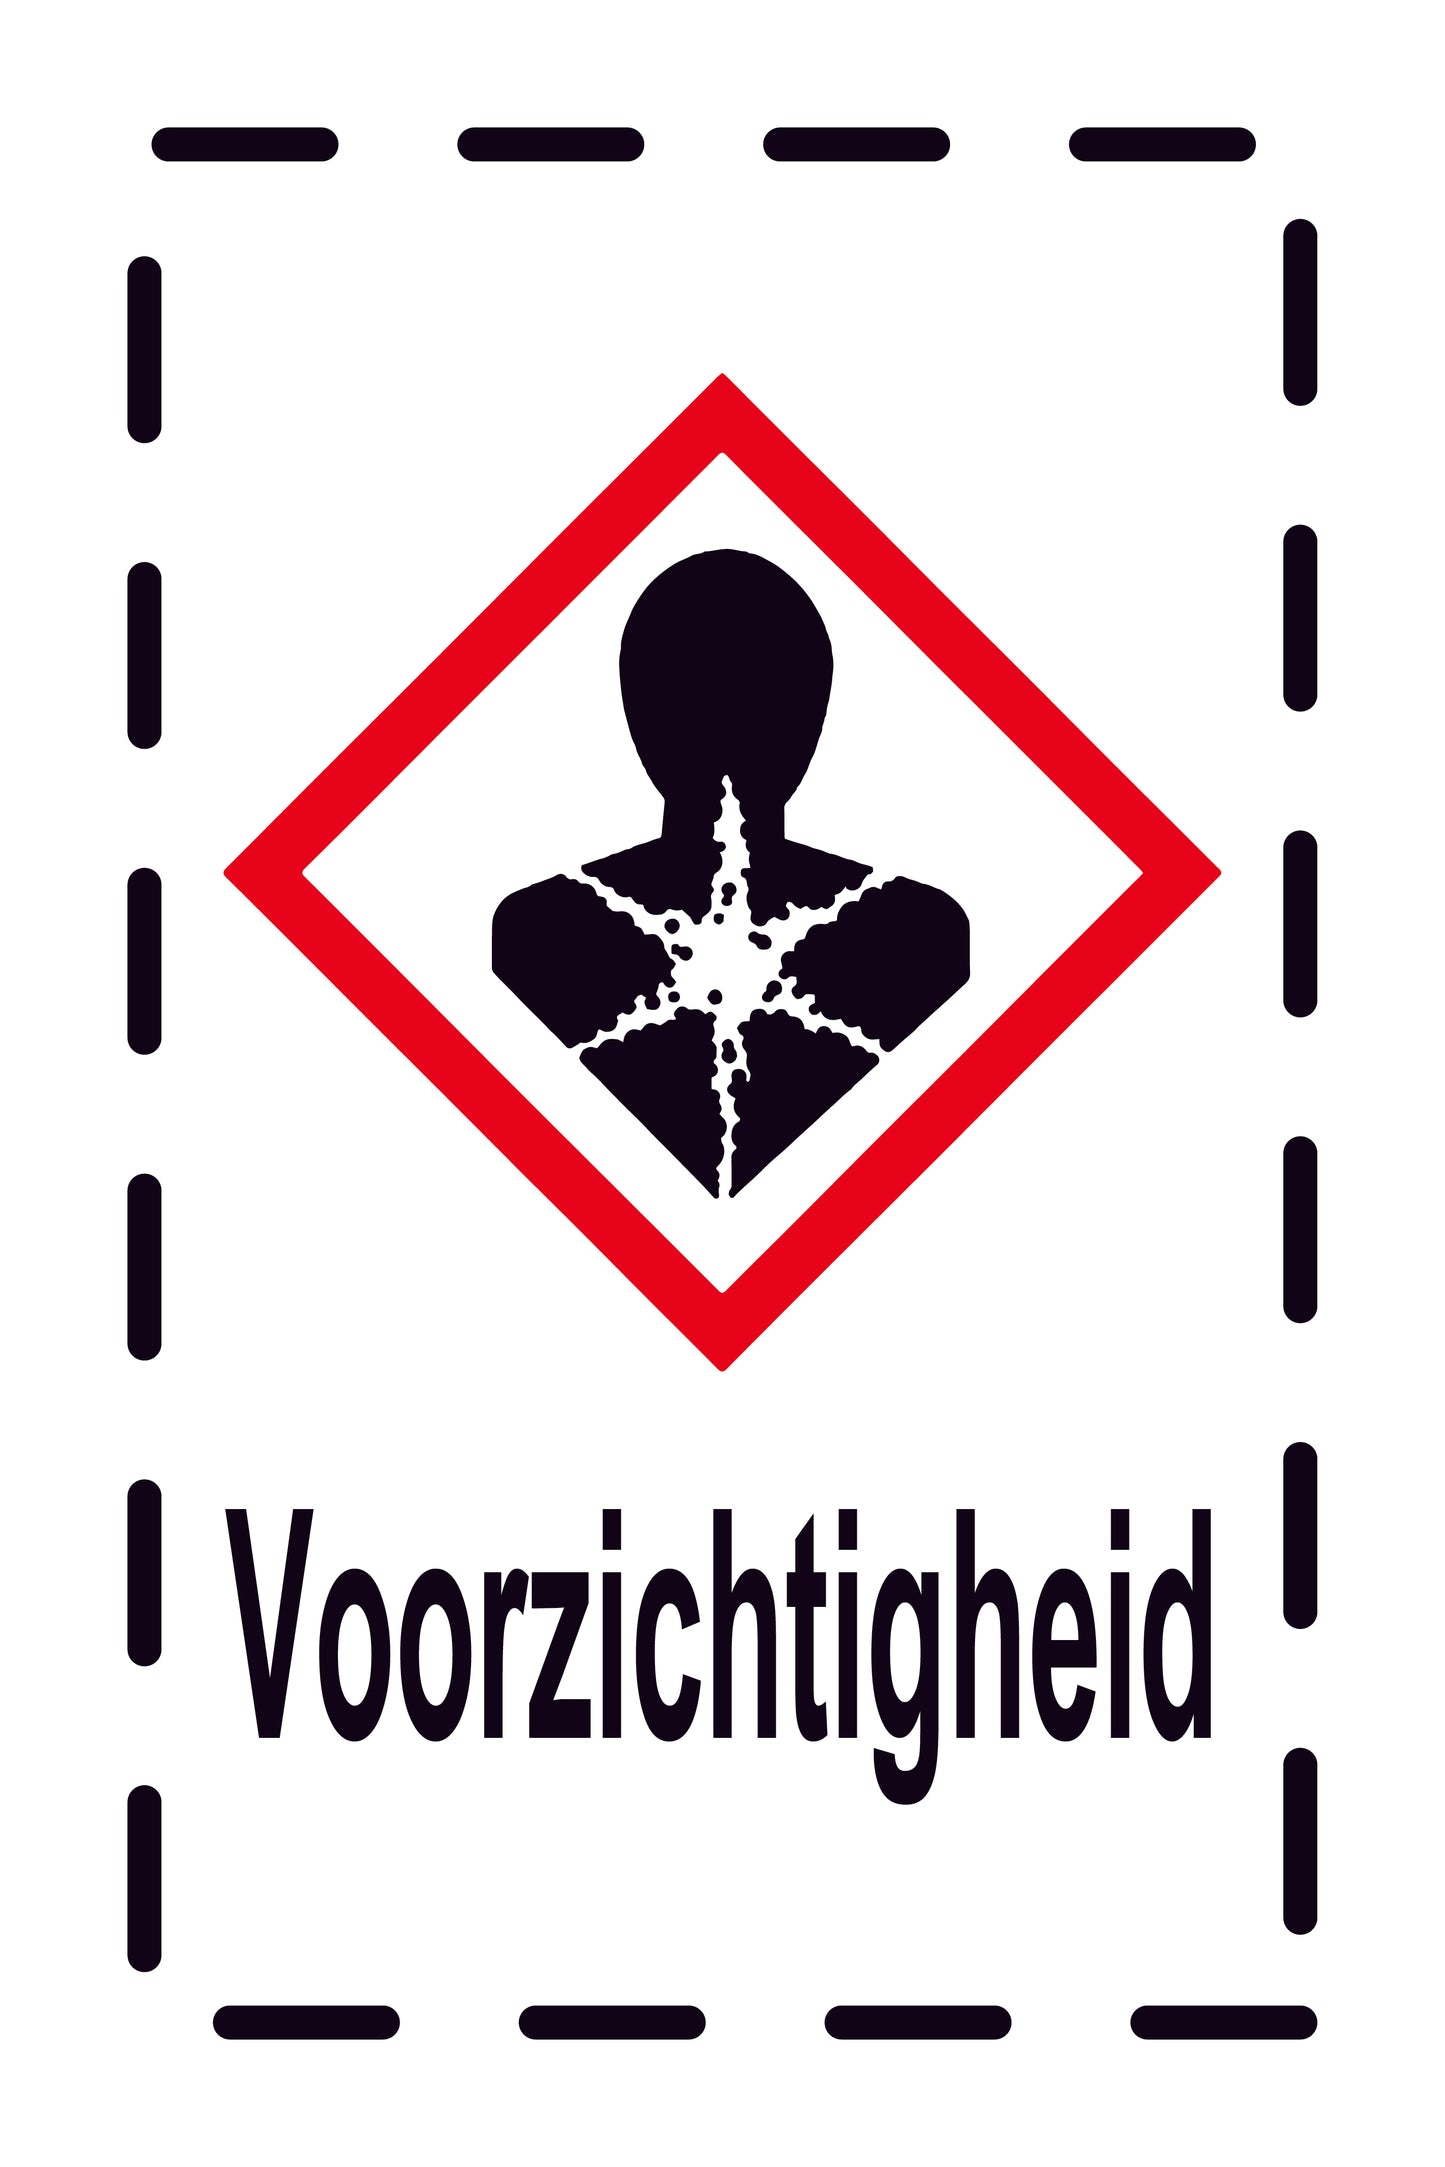 1000 stickers "Voorzichtigheid Gezondheidsgevaar" 2,4x3,9 cm tot 15x24 cm, gemaakt van papier of kunststof EW-GHS-08-Voorzichtigheid